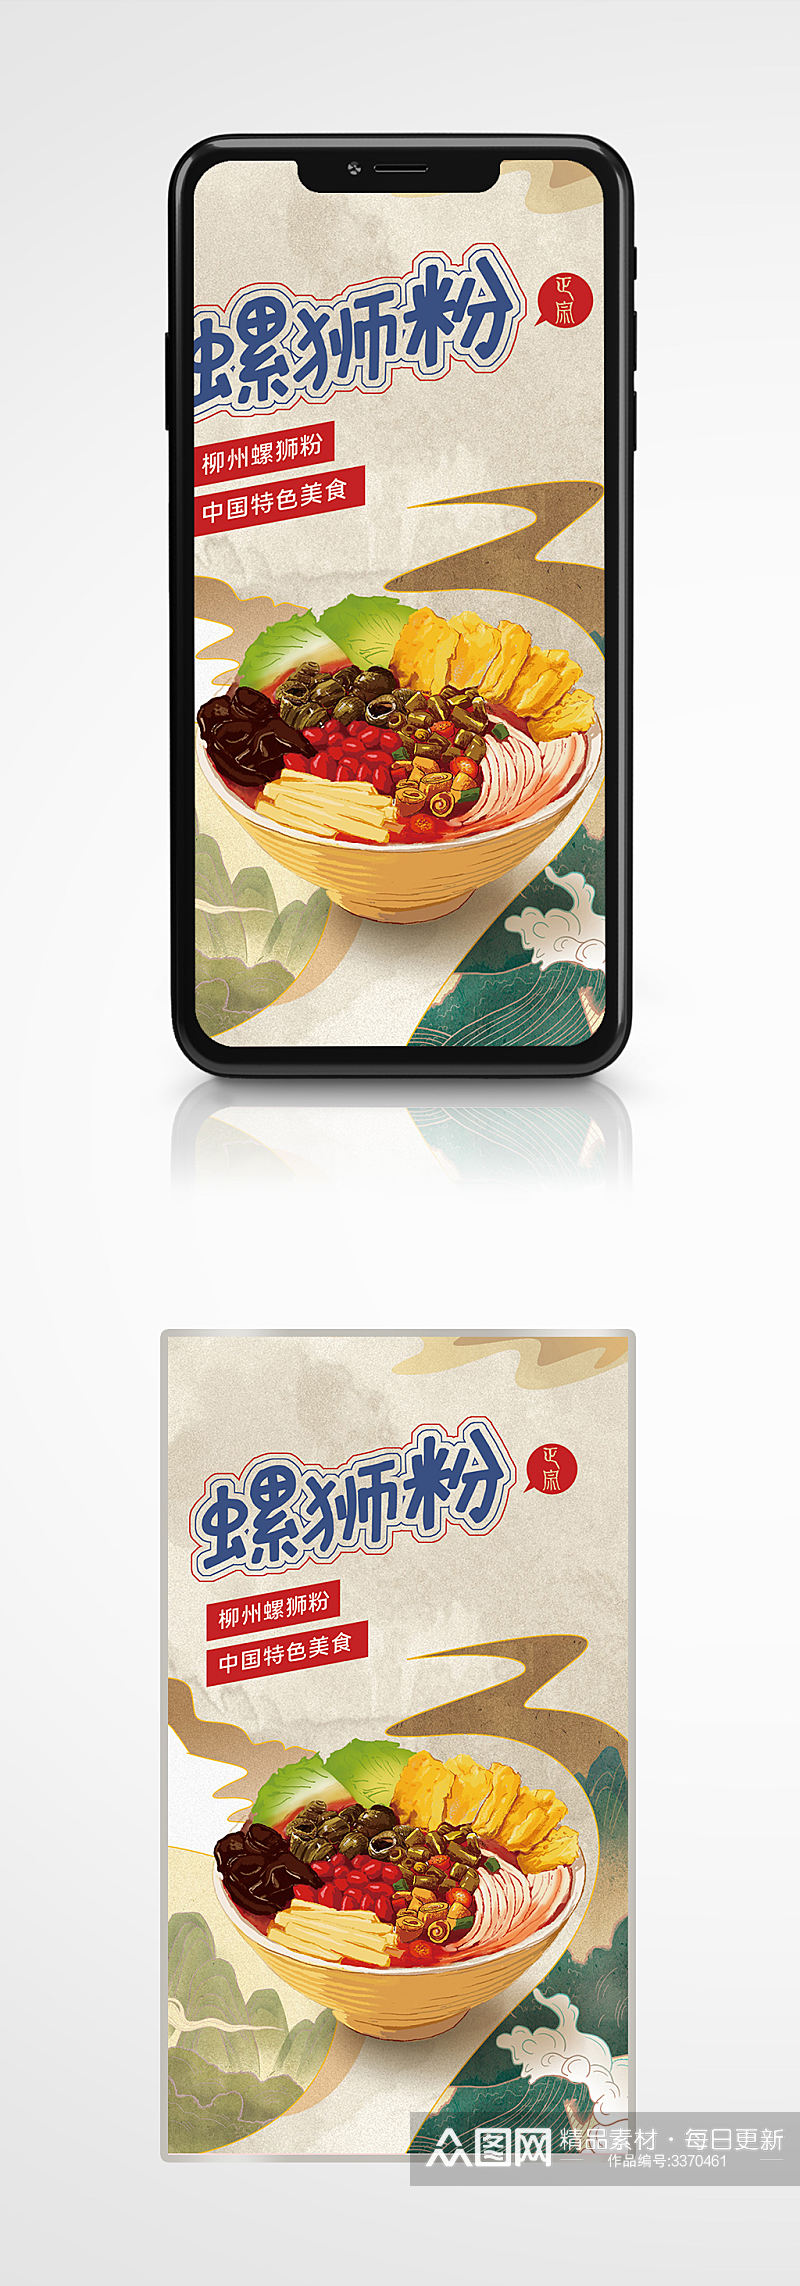 手绘中国风中华小吃螺狮粉海报插画促销素材